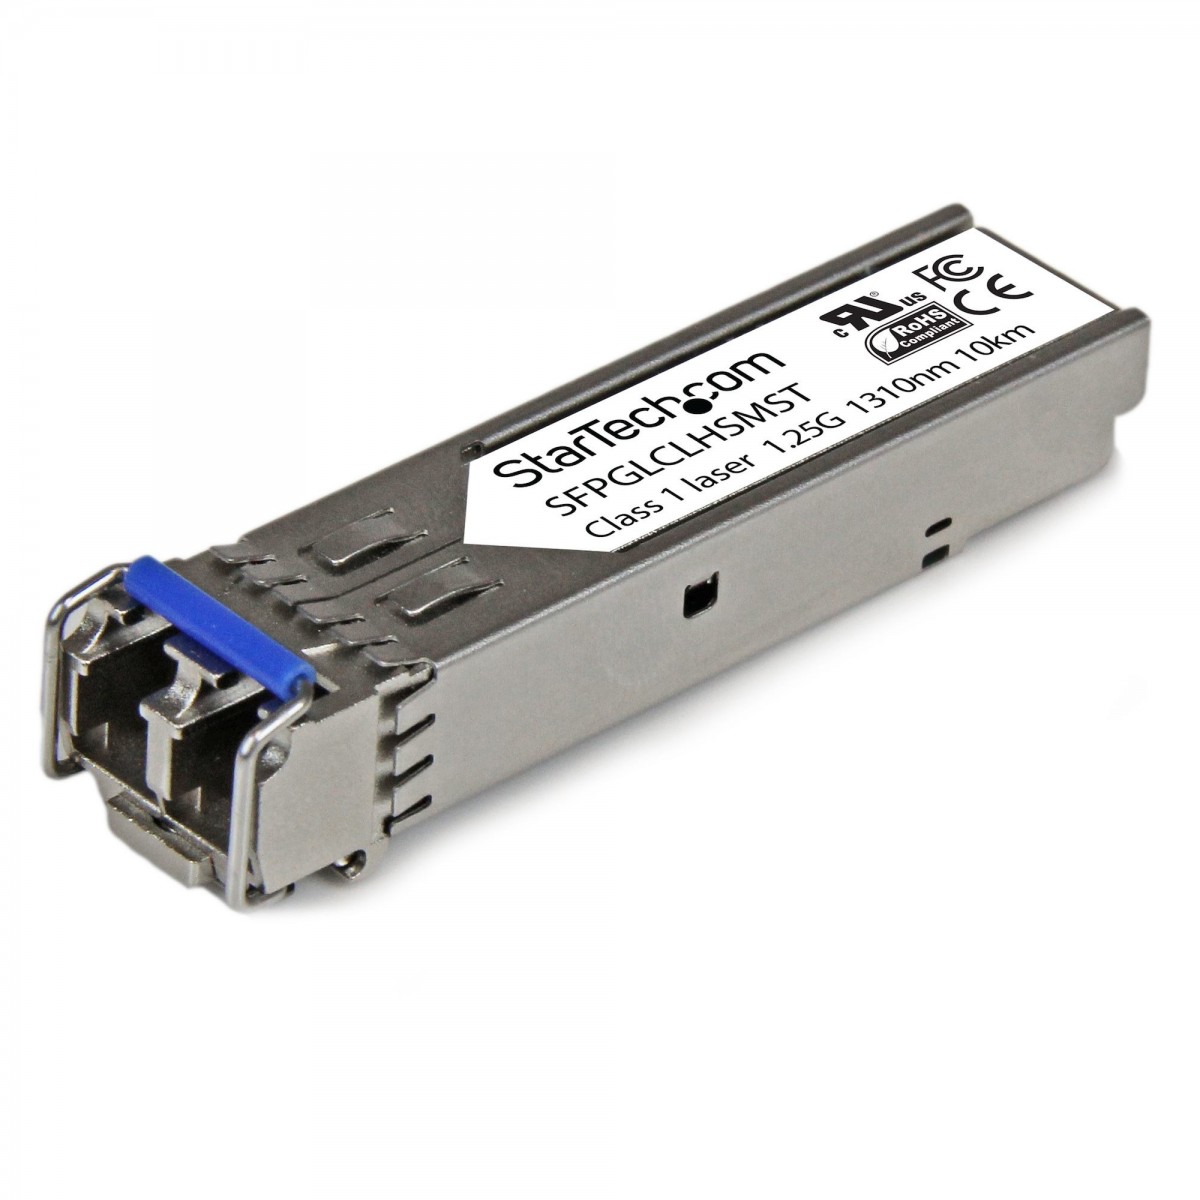 StarTech.com Cisco GLC-LH-SM Compatible SFP Transceiver Module - 1000BASE-LX/LH - 10 PACK - Fiber optic - 1250 Mbit/s - SFP - LC